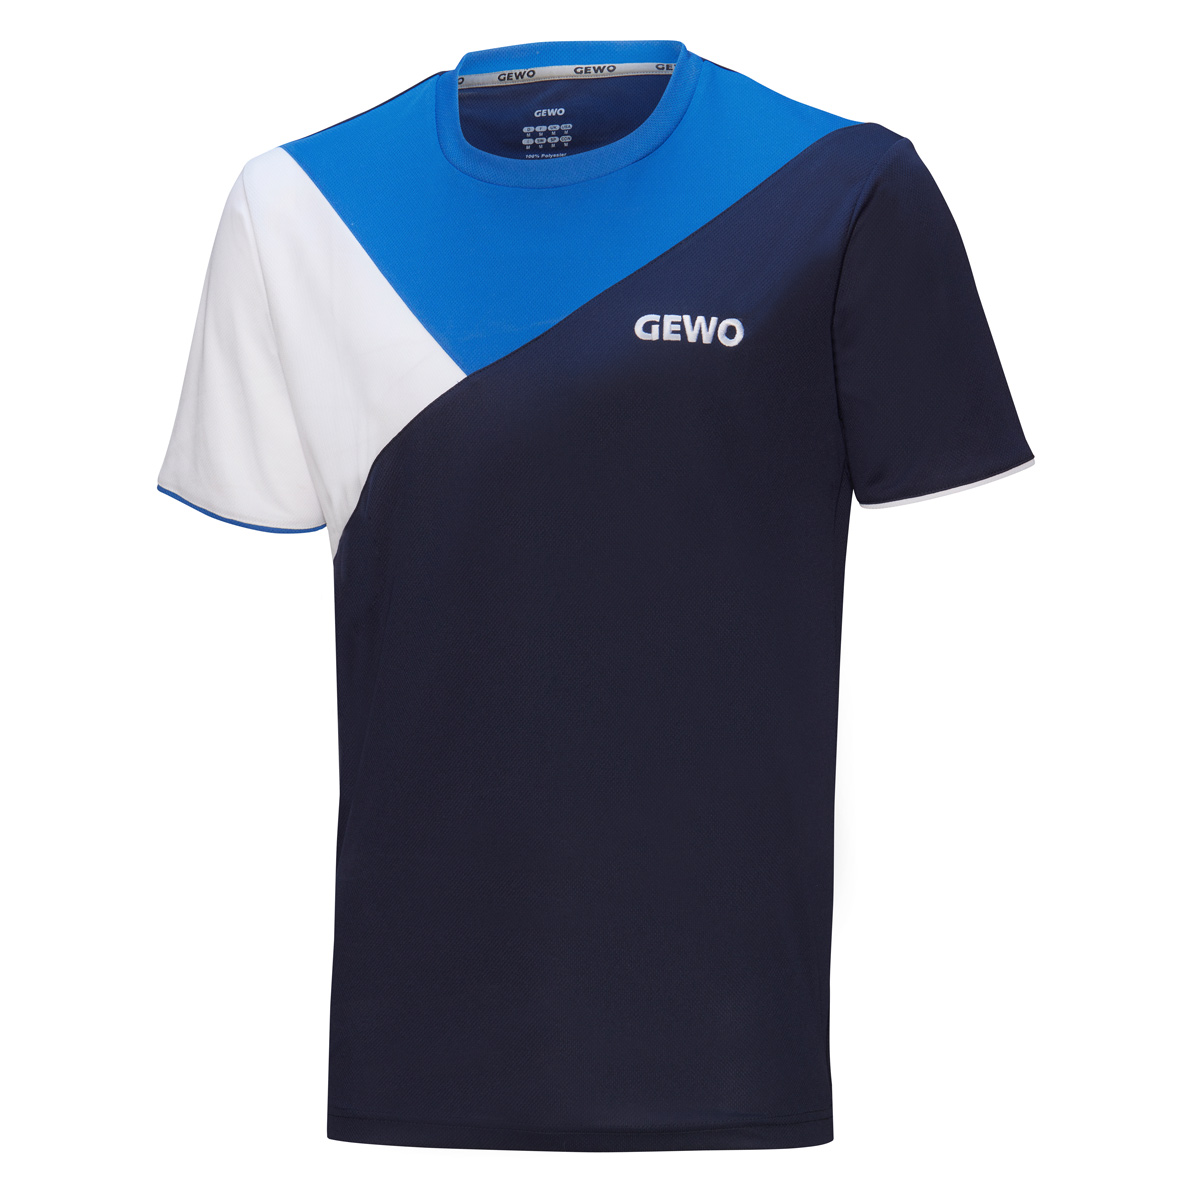 GEWO T-Shirt Toledo navy/royal XXXXS